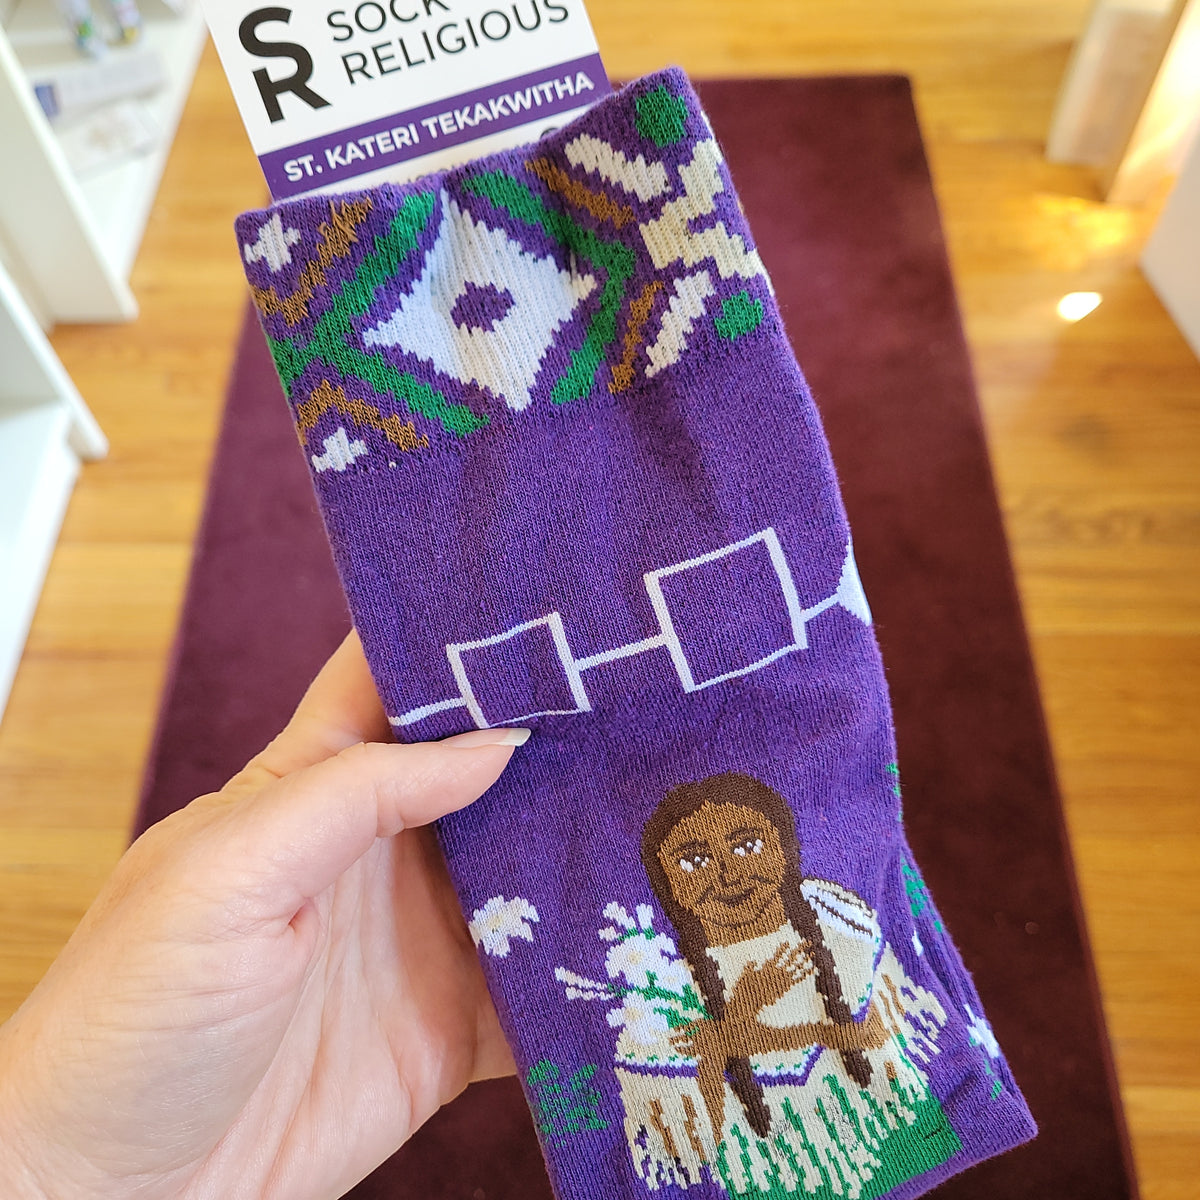 Marian Monogram Religious Socks